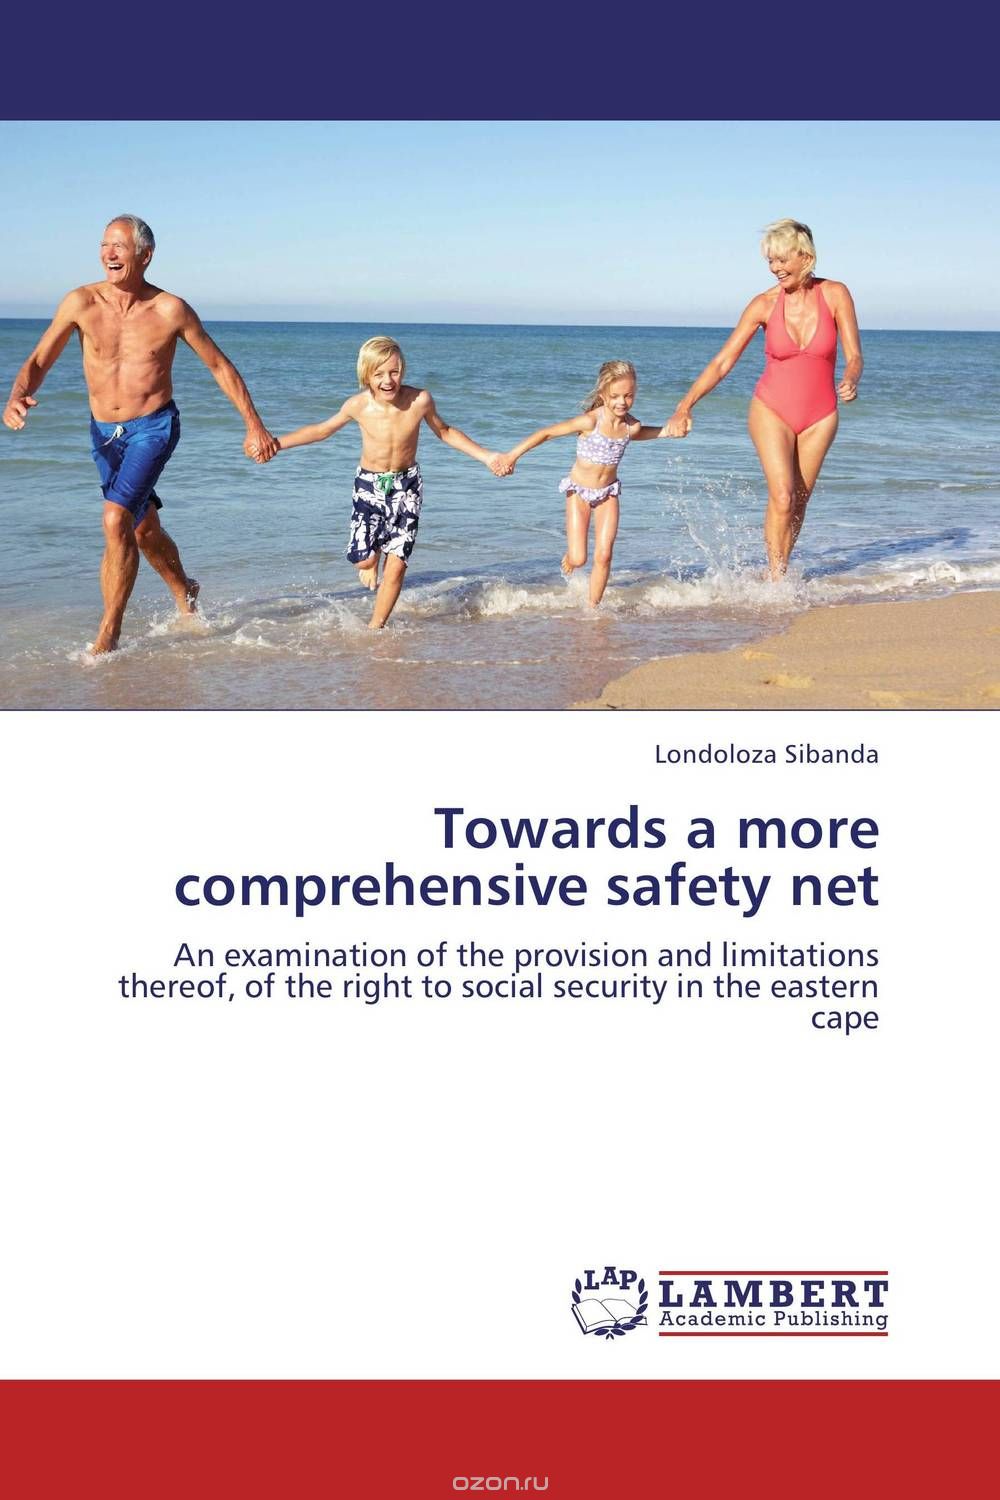 Скачать книгу "Towards a more comprehensive safety net"